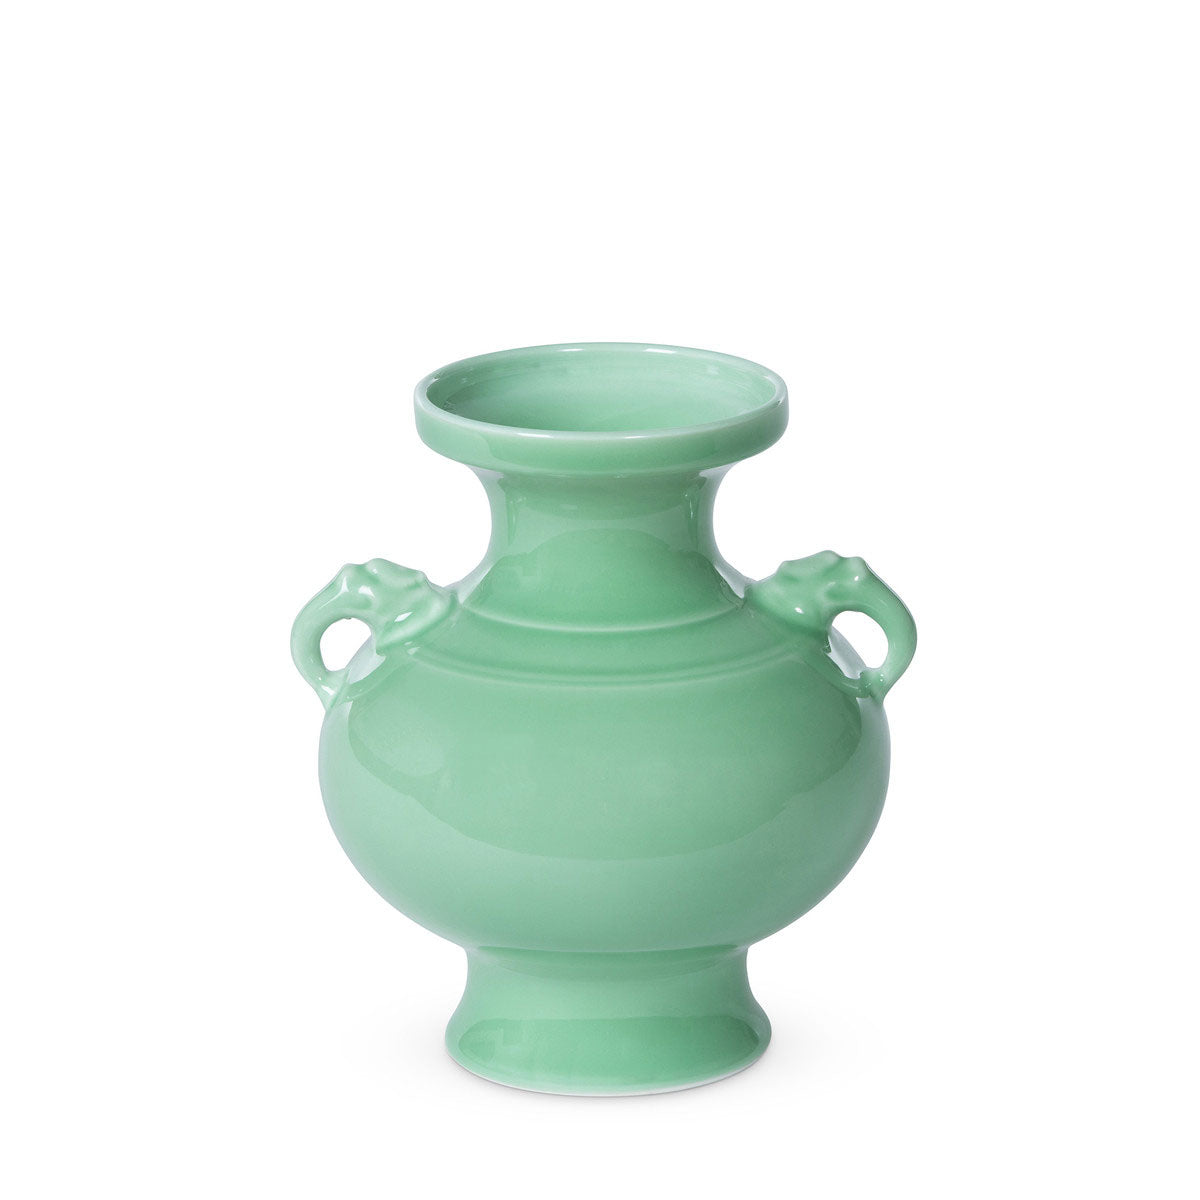 The Celadon Glaze Porcelain Cottage Vase